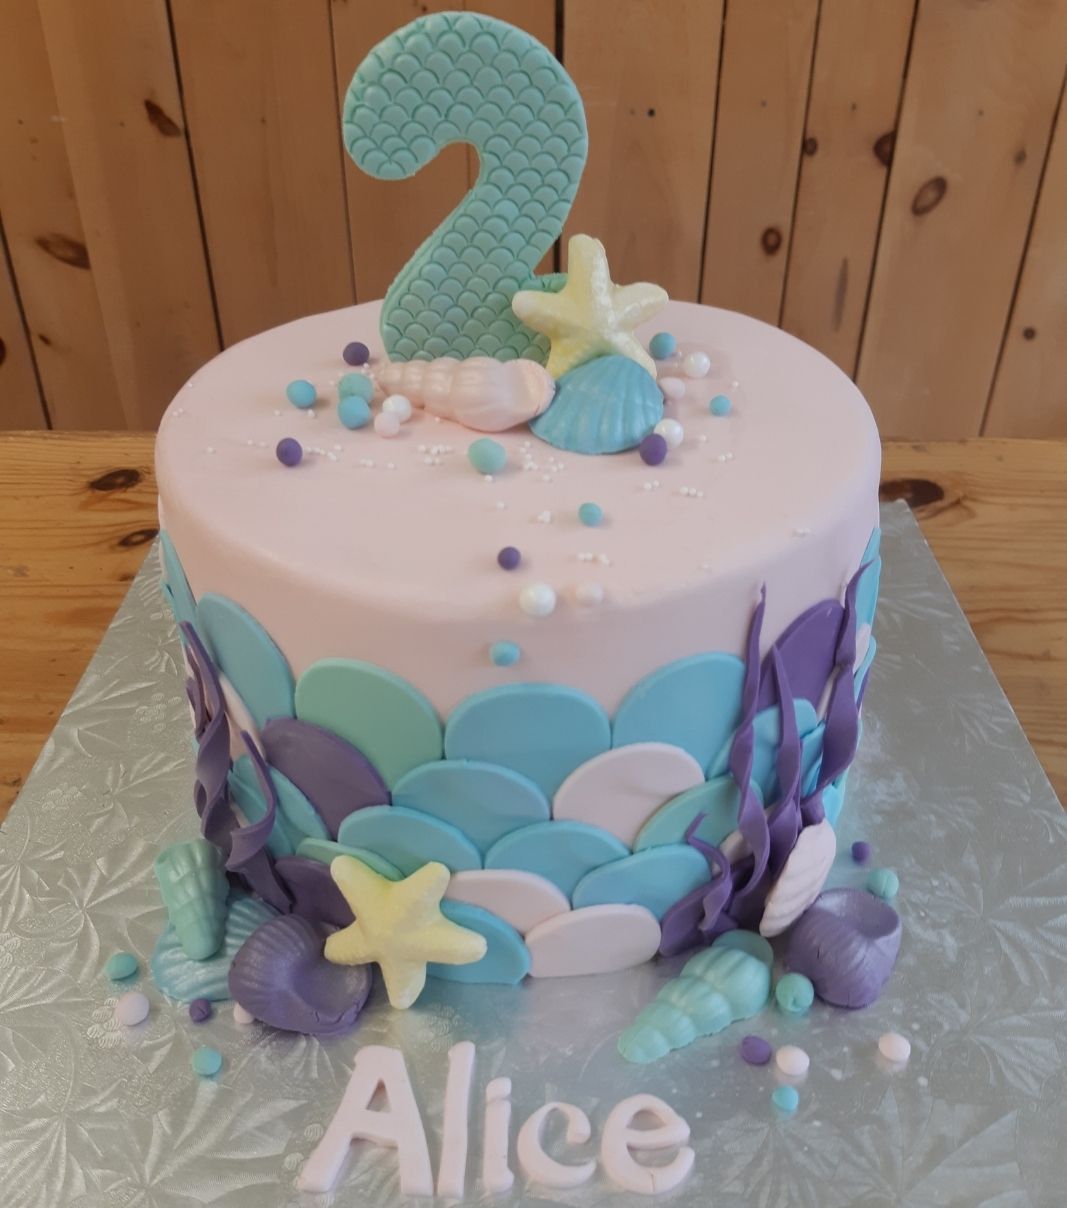 Gâteau d'anniversaire sur mesure des 2 ans d'Alice: gâteau à thématique de sirène avec une couverture en fondant et décoré d'items de la mer, de coquillages et du chiffre 2 couvert d'écailles en fondant.